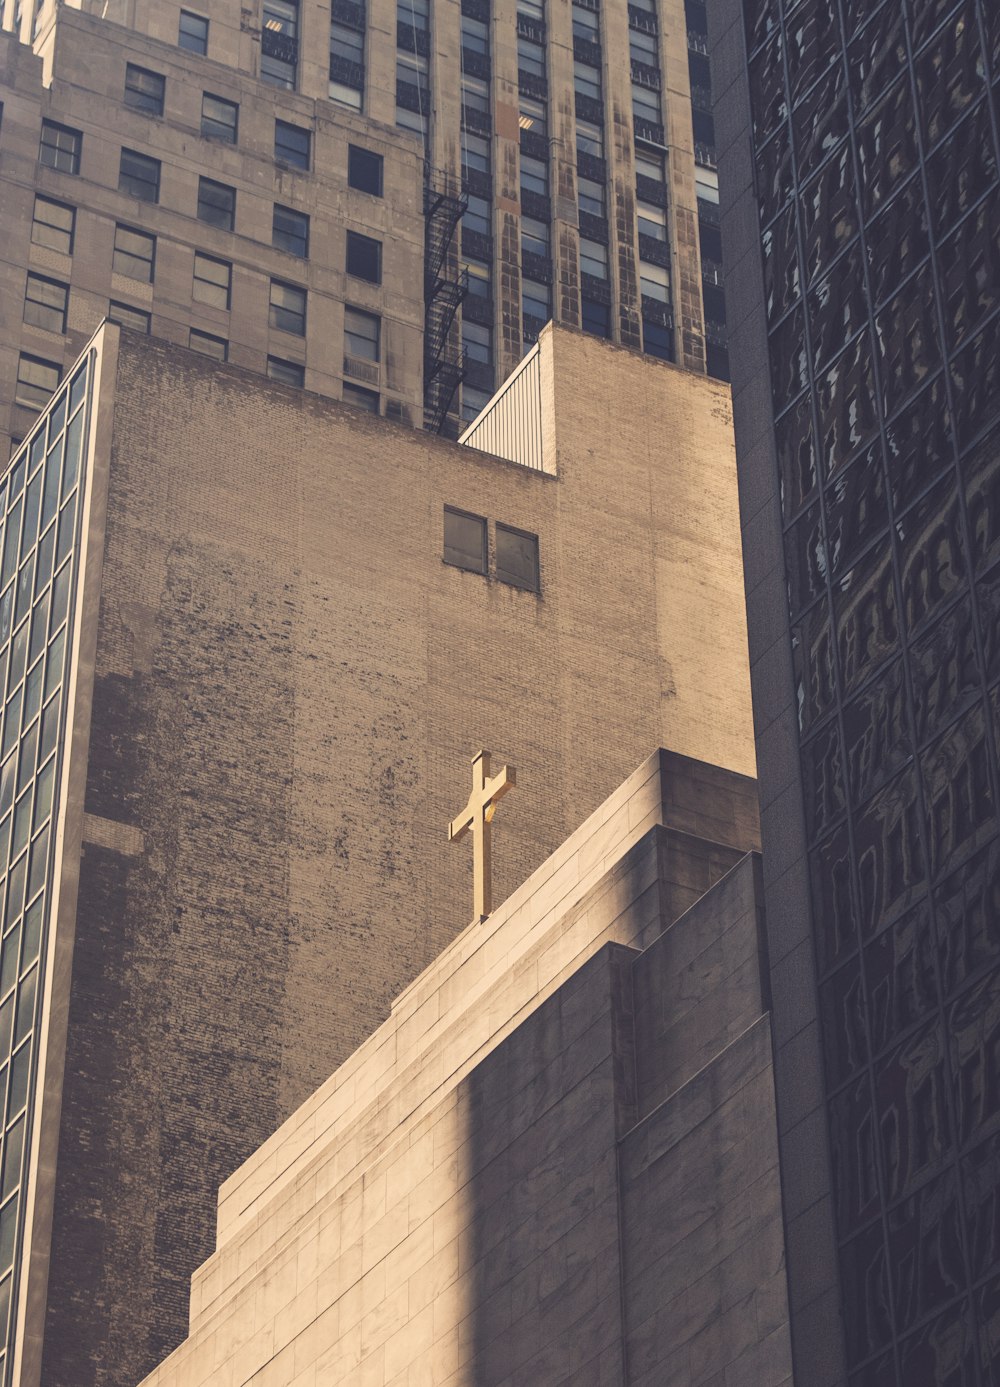 fotografia ad angolo basso dell'edificio in calcestruzzo con la croce